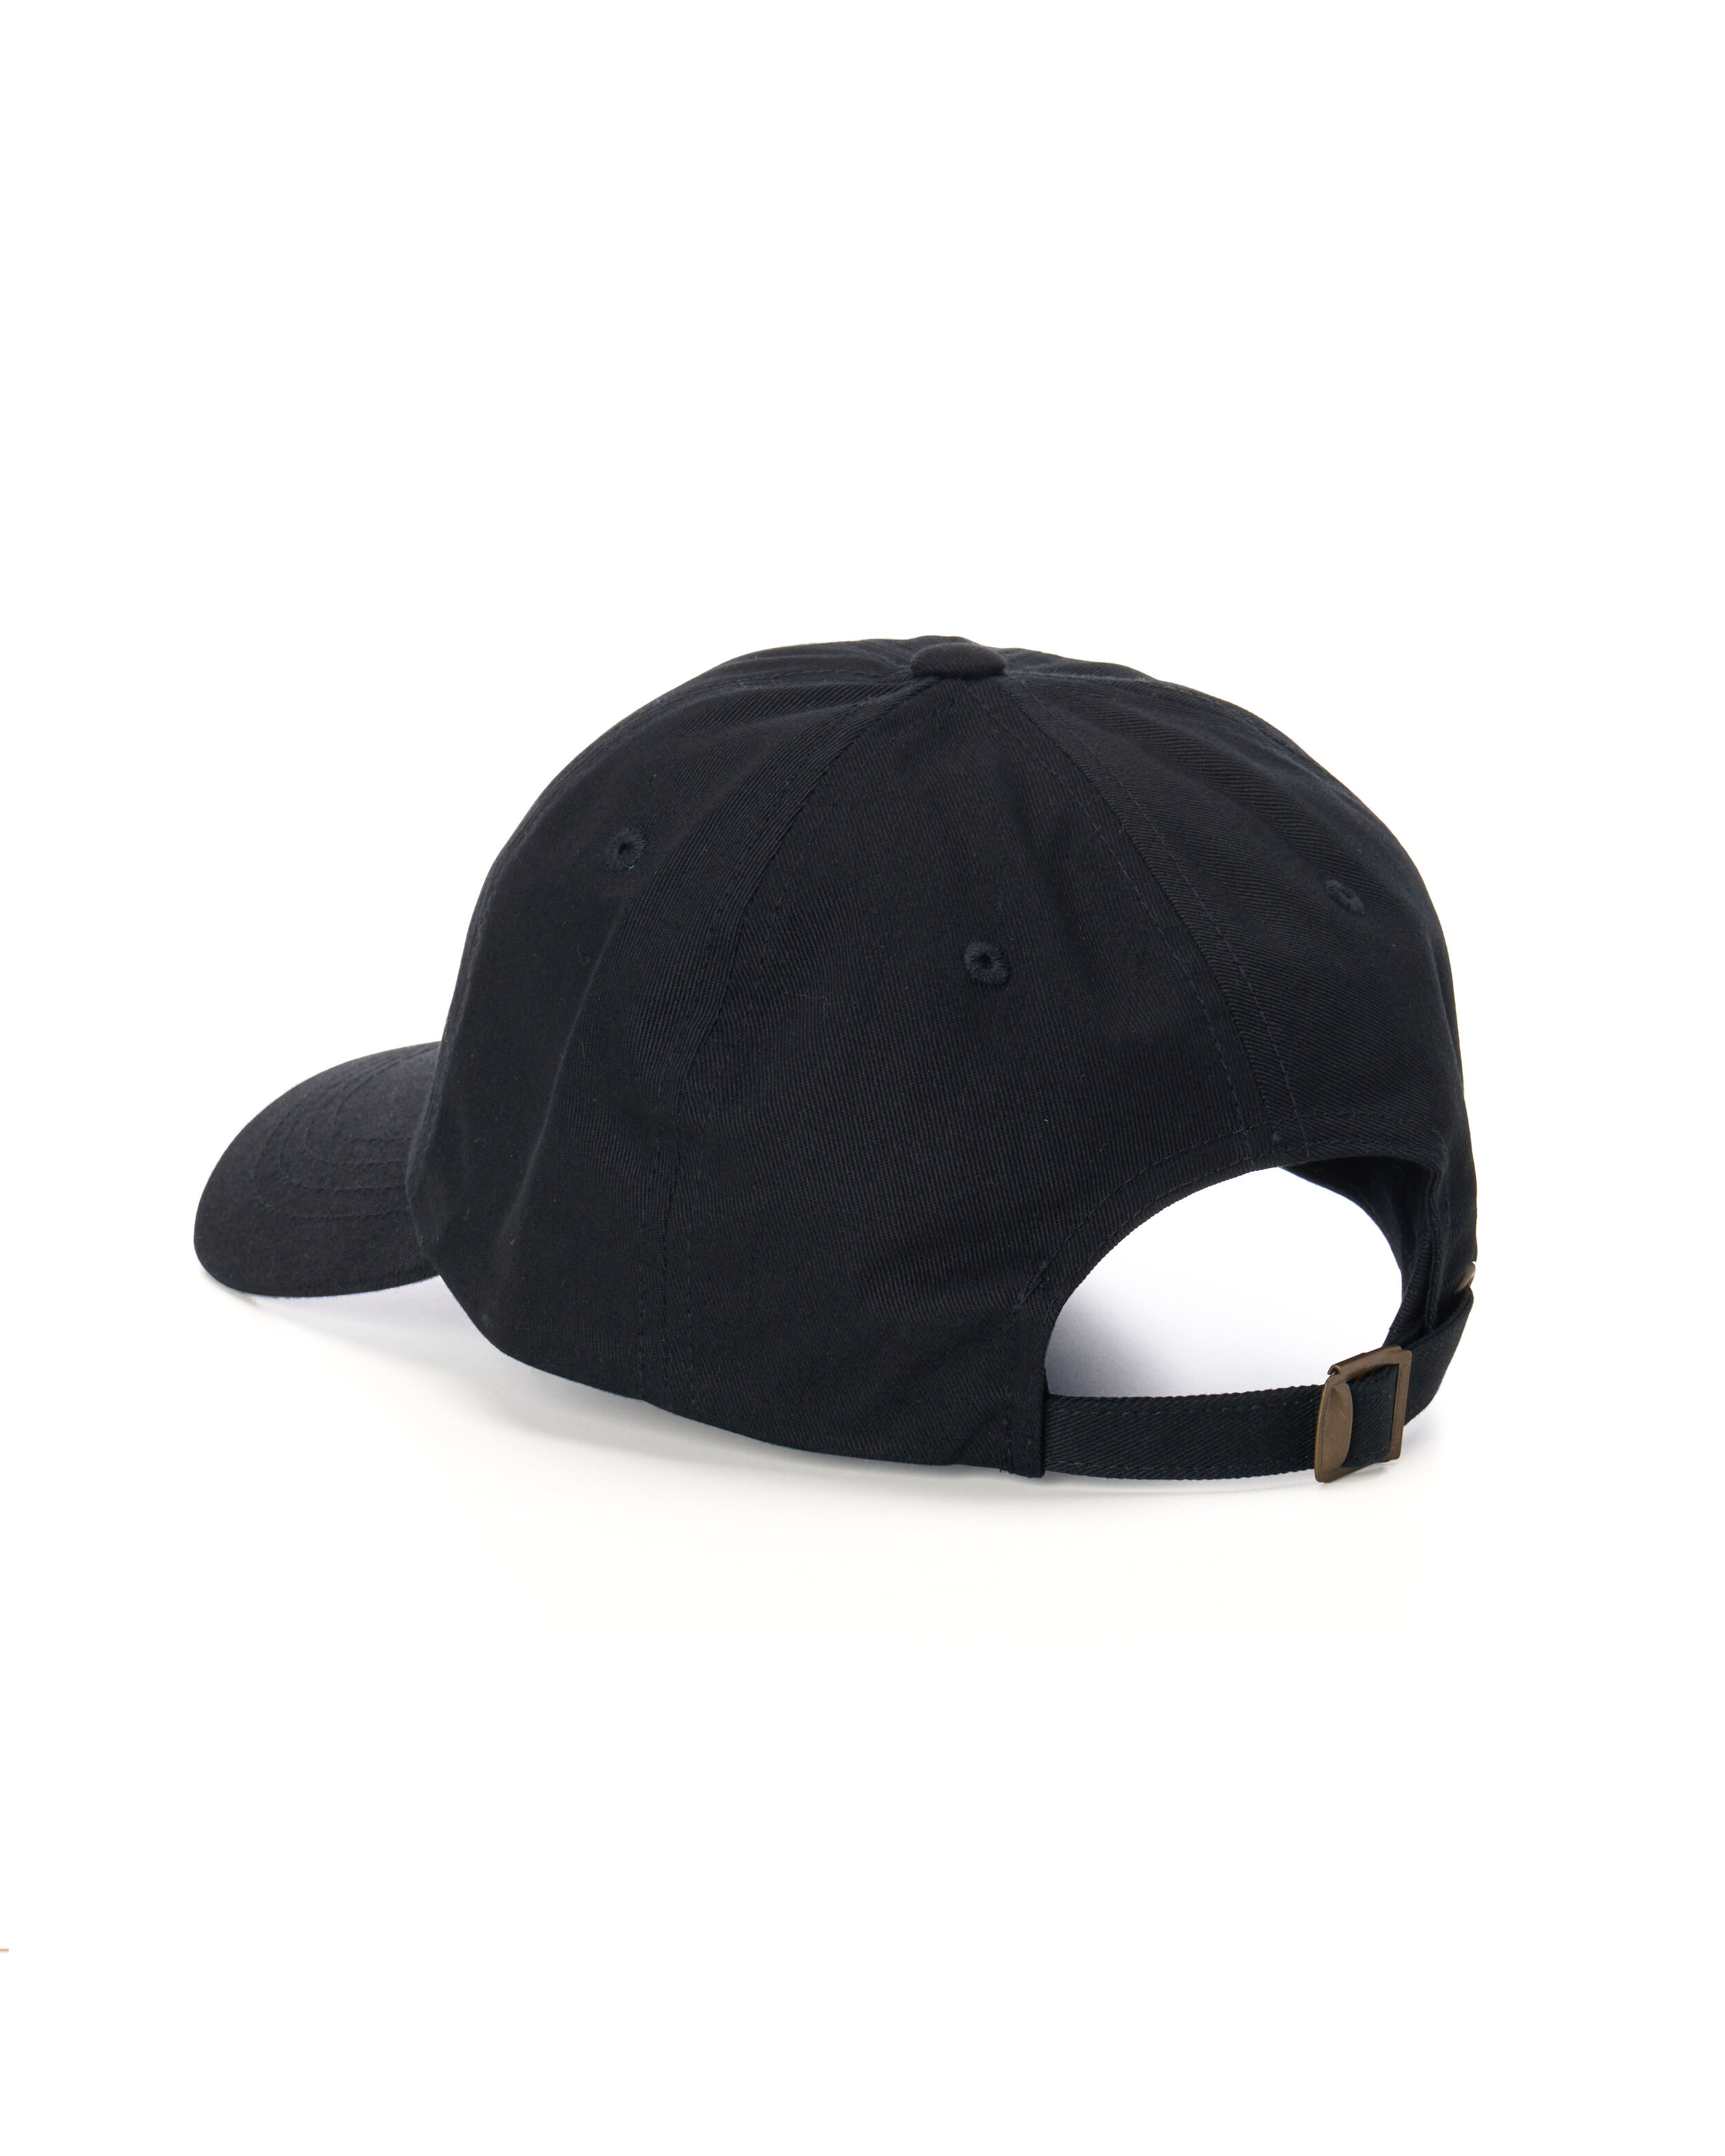 Caps — HOTBOX Caps - Buy Caps Online for Men and Women — WearHotBox